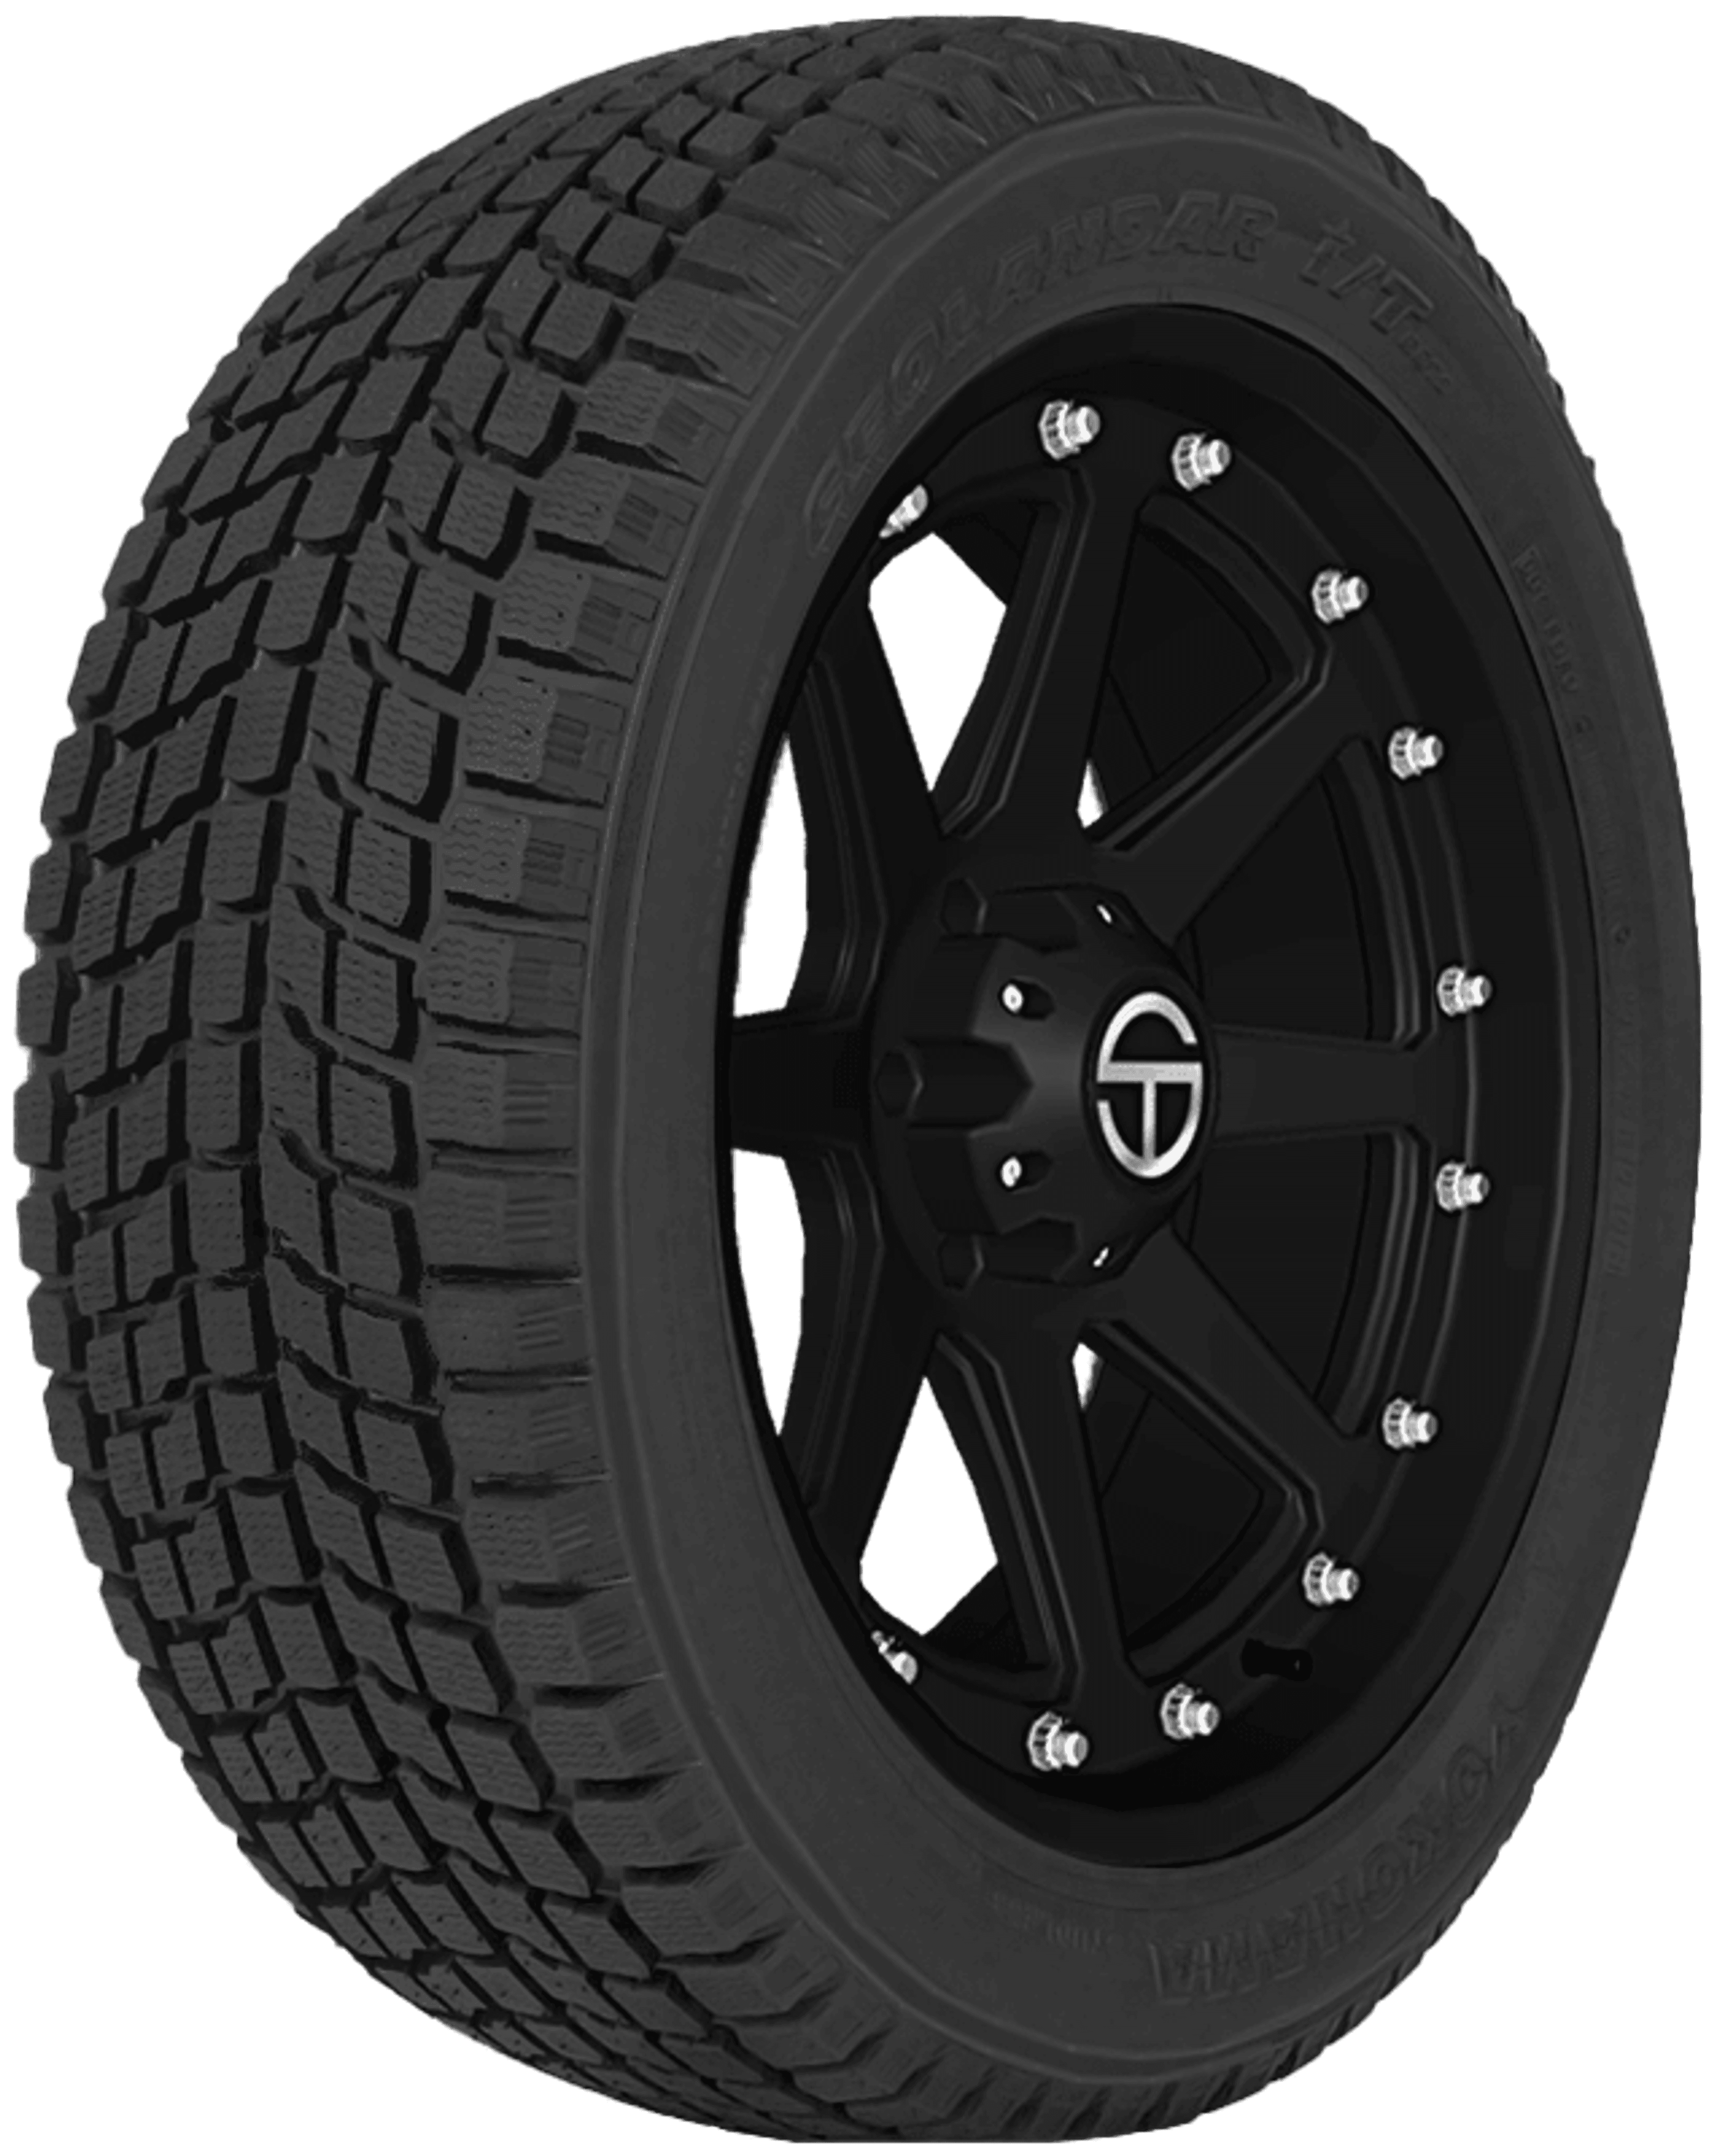 Buy Yokohama i/T G072 Online SimpleTire Tires Geolandar 